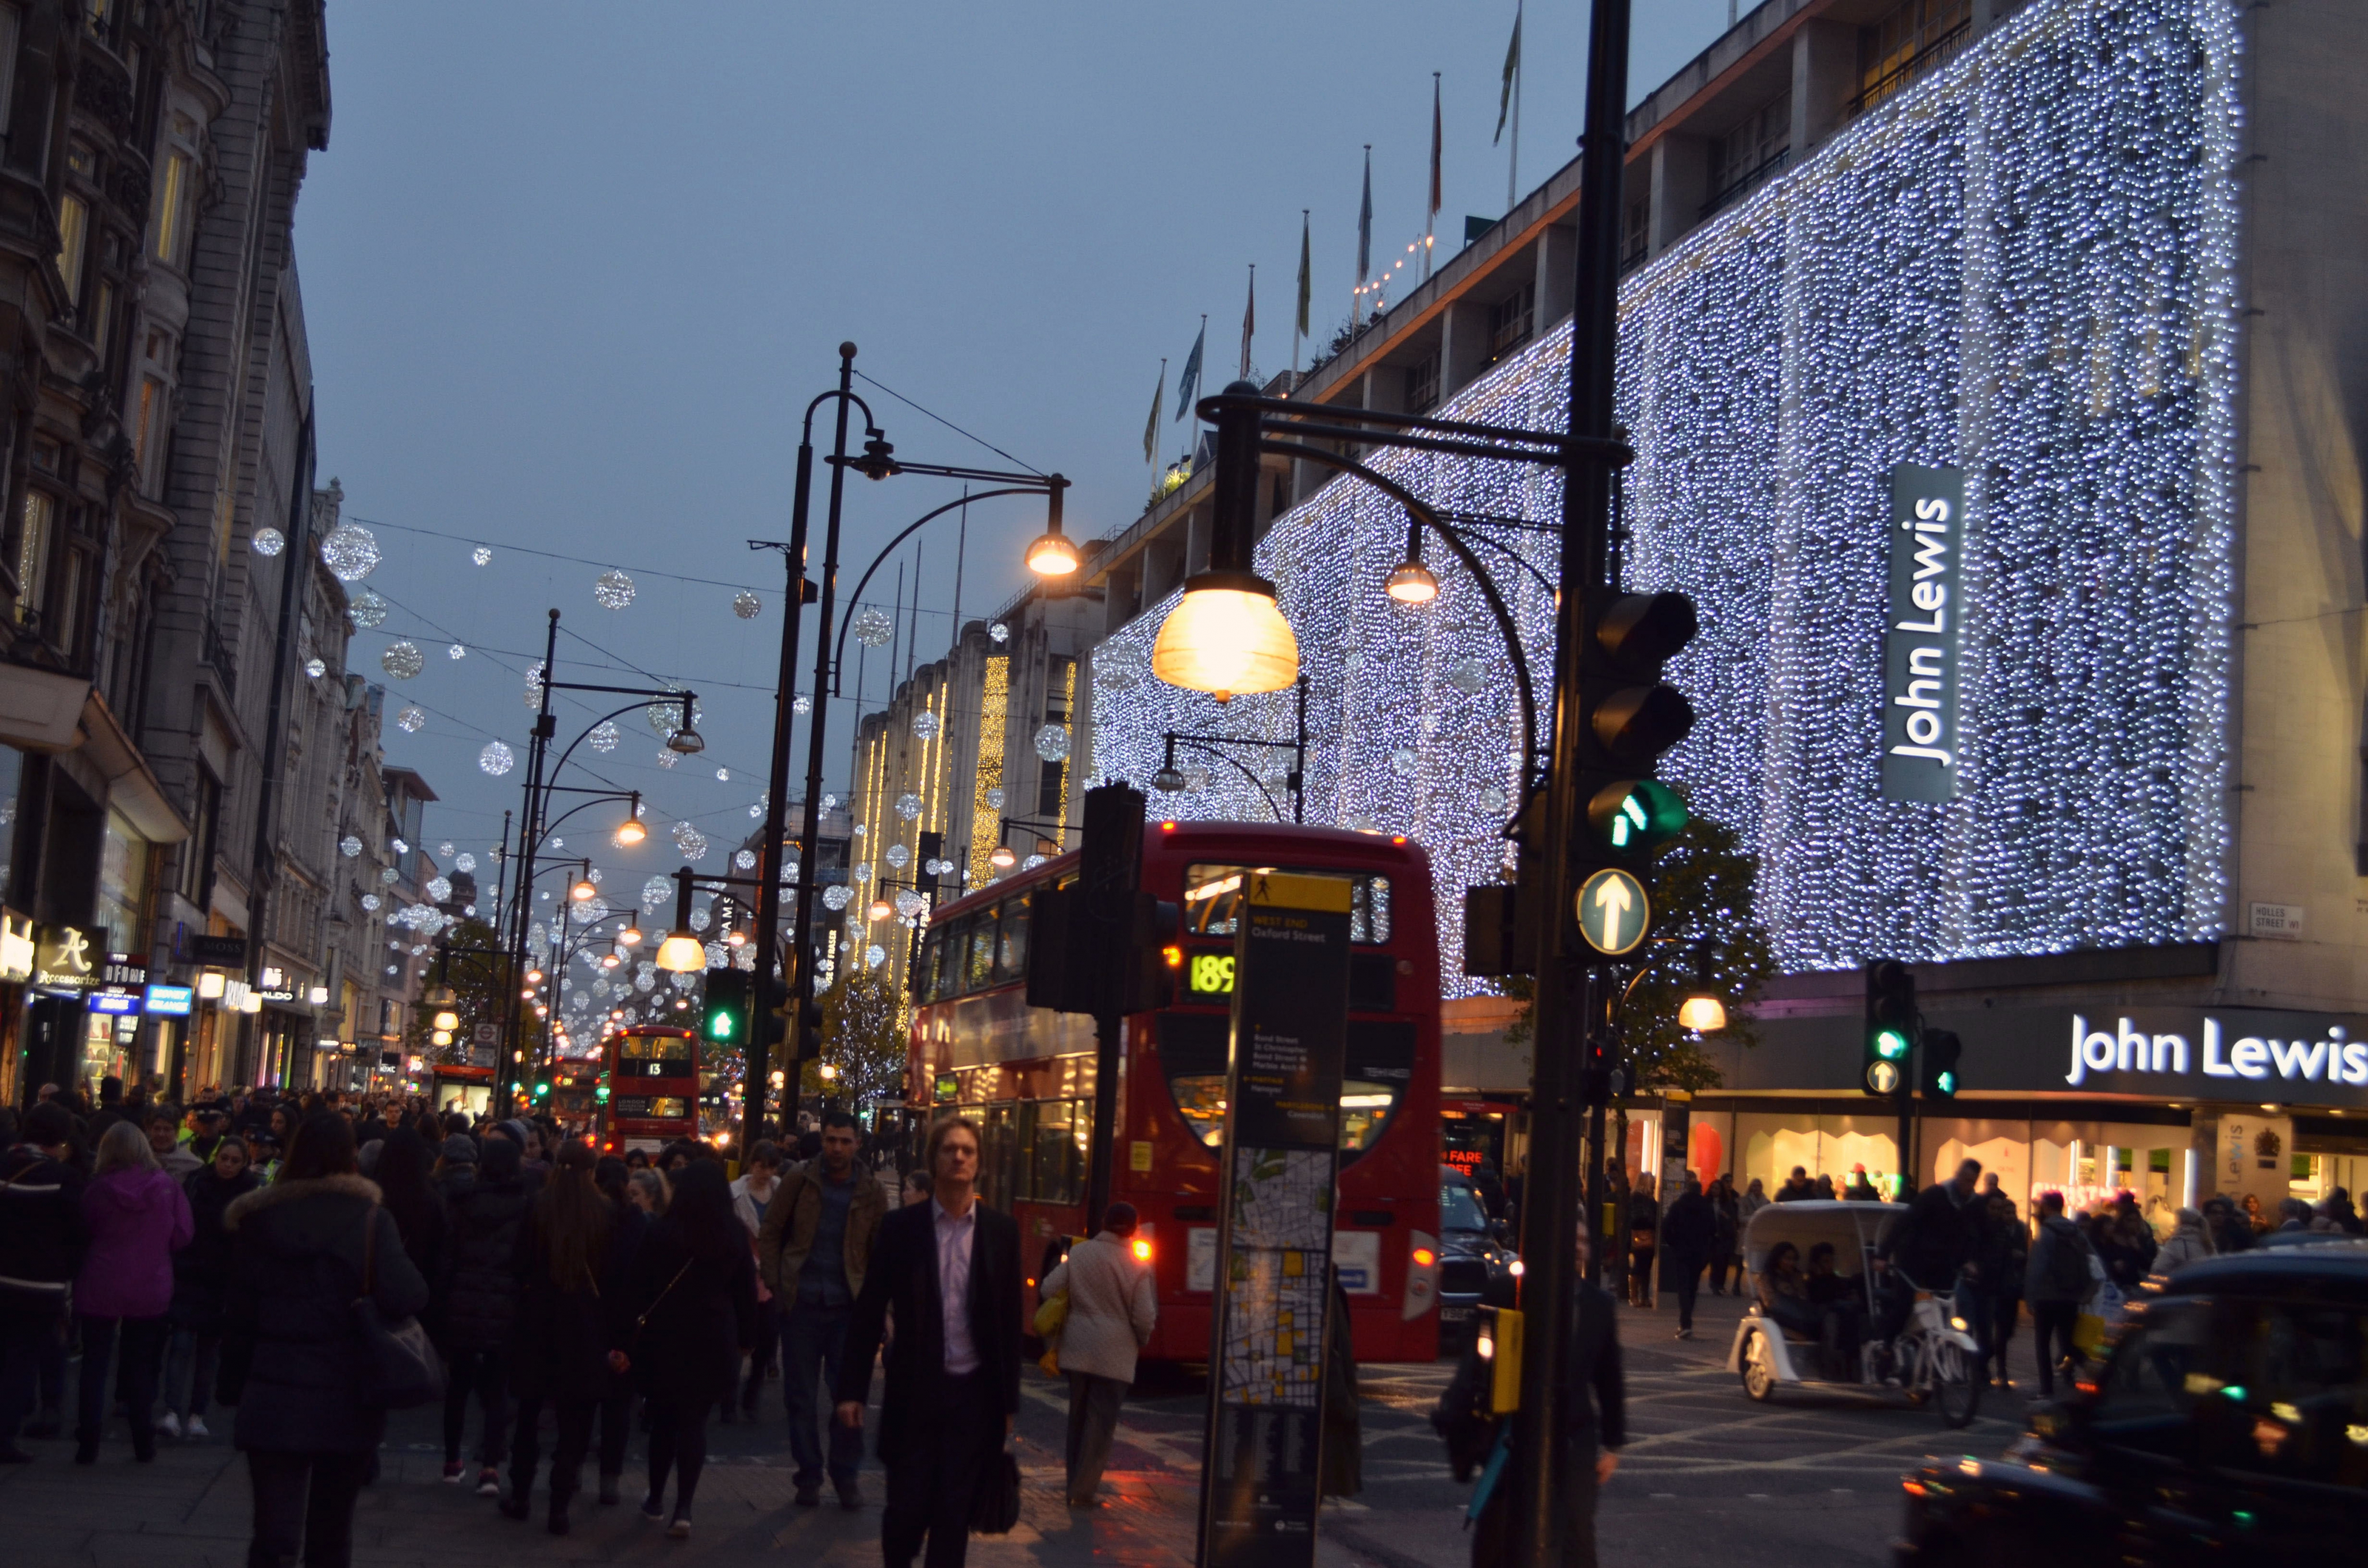 Wieczorny spacer świątecznymi ulicami Londynu!